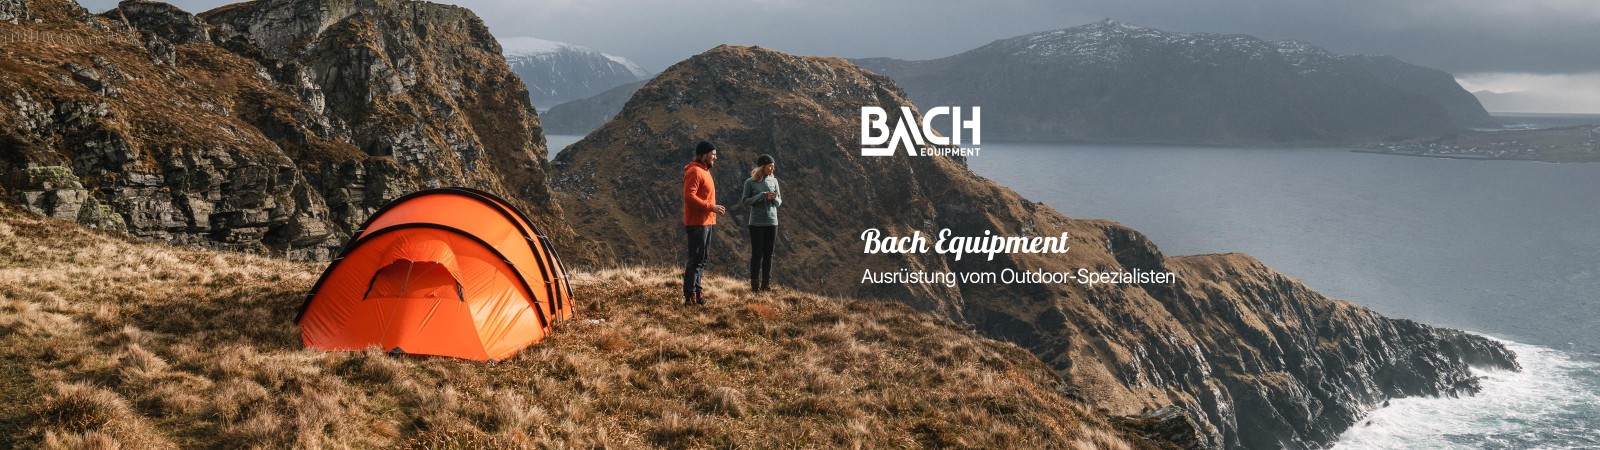 Bach Equipment - Ausrüstung vom Outdoor-Spezialisten